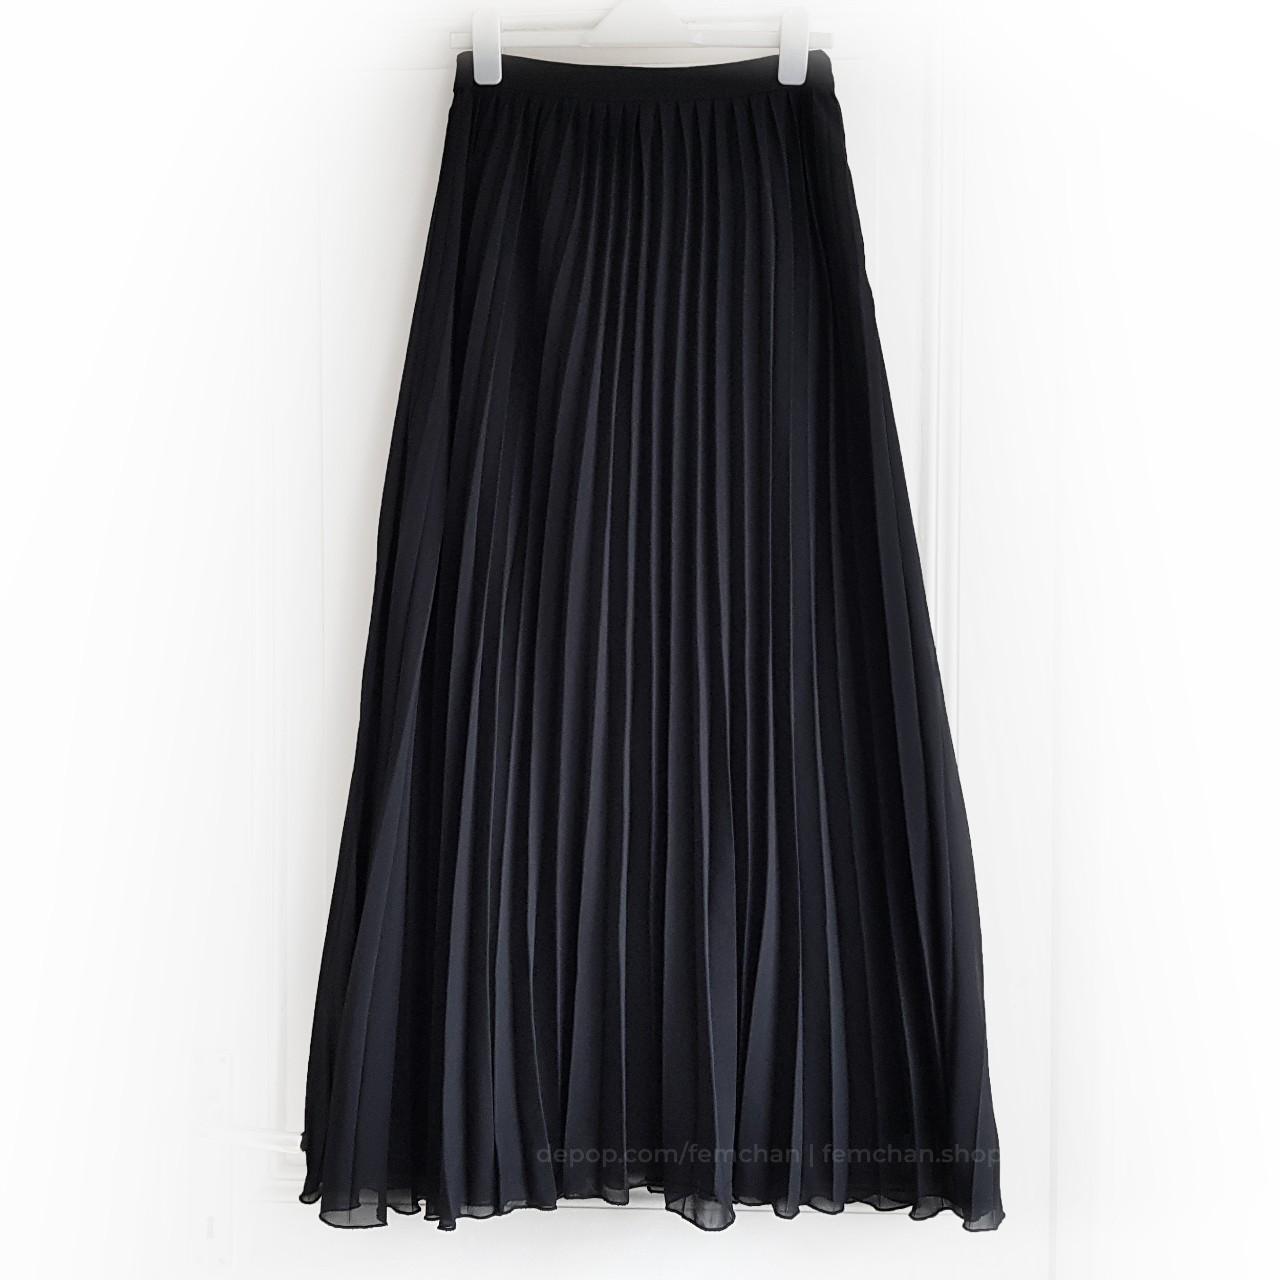 ASOS Women's Black Skirt | Depop